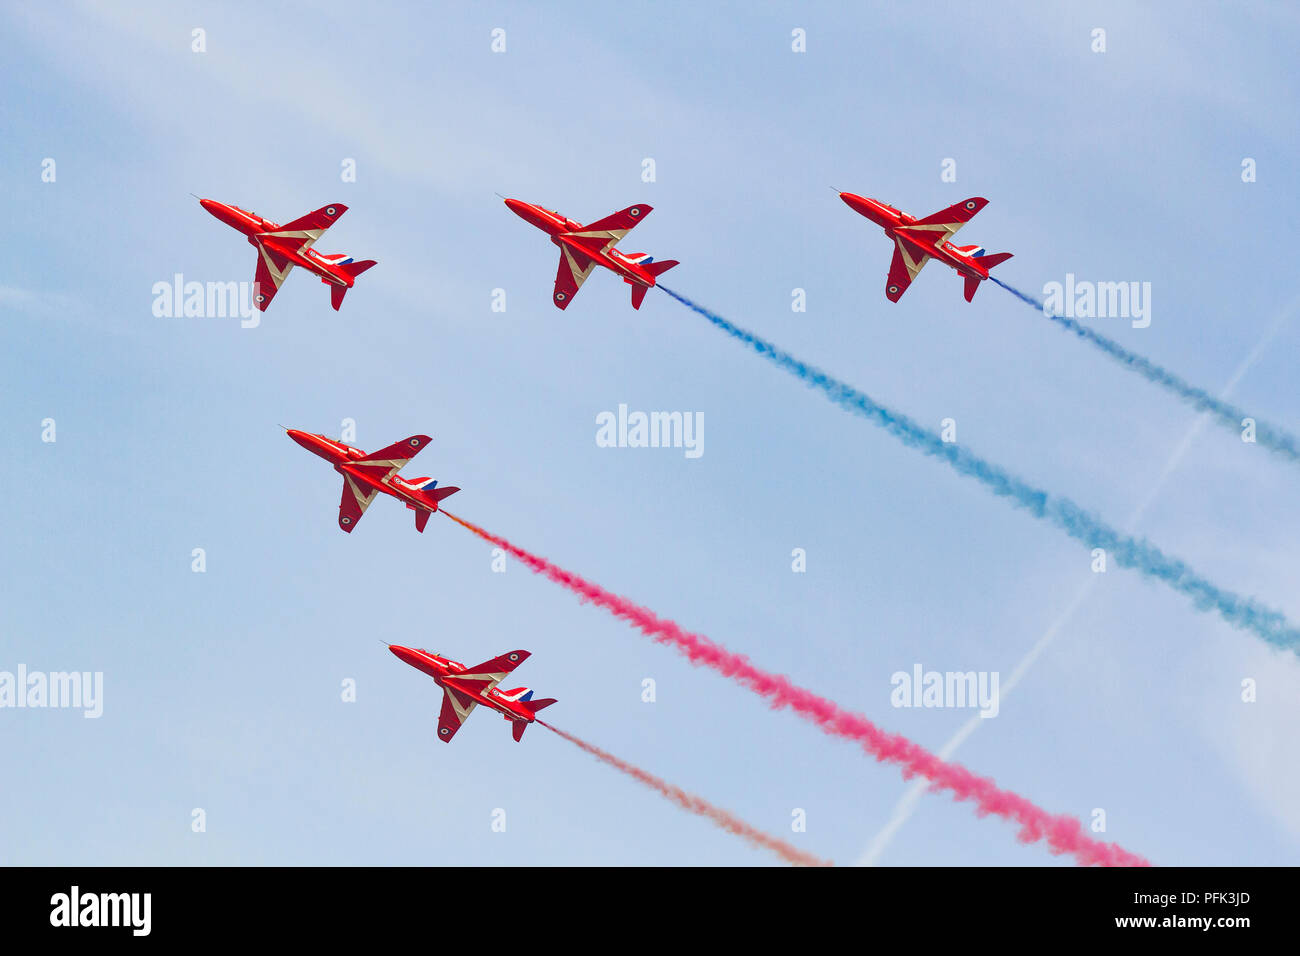 Les flèches rouges de la Royal Air Force l'affichage de la scène de l'équipe de voltige aérienne à Blackpool Banque D'Images